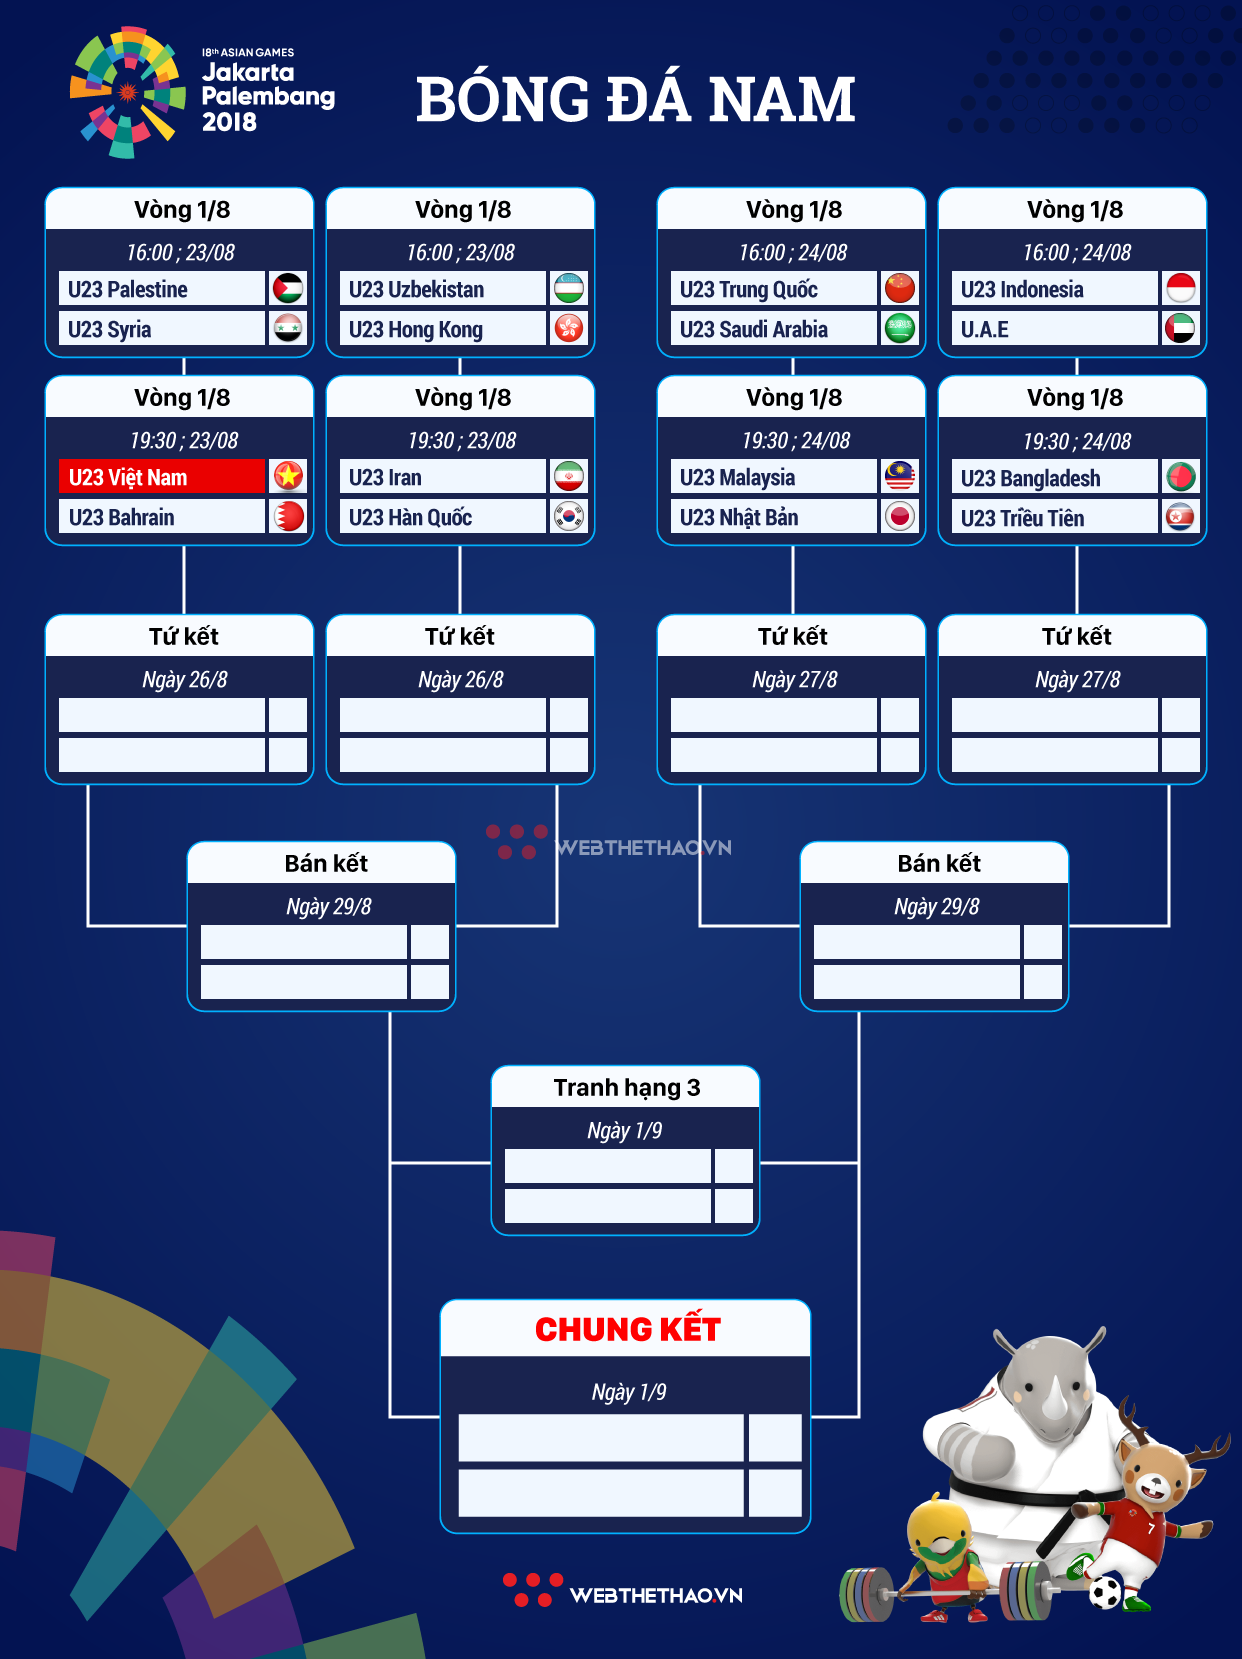 Lịch thi đấu & kết quả vòng 1/8 bóng đá nam ASIAD 2018 - Ảnh 2.